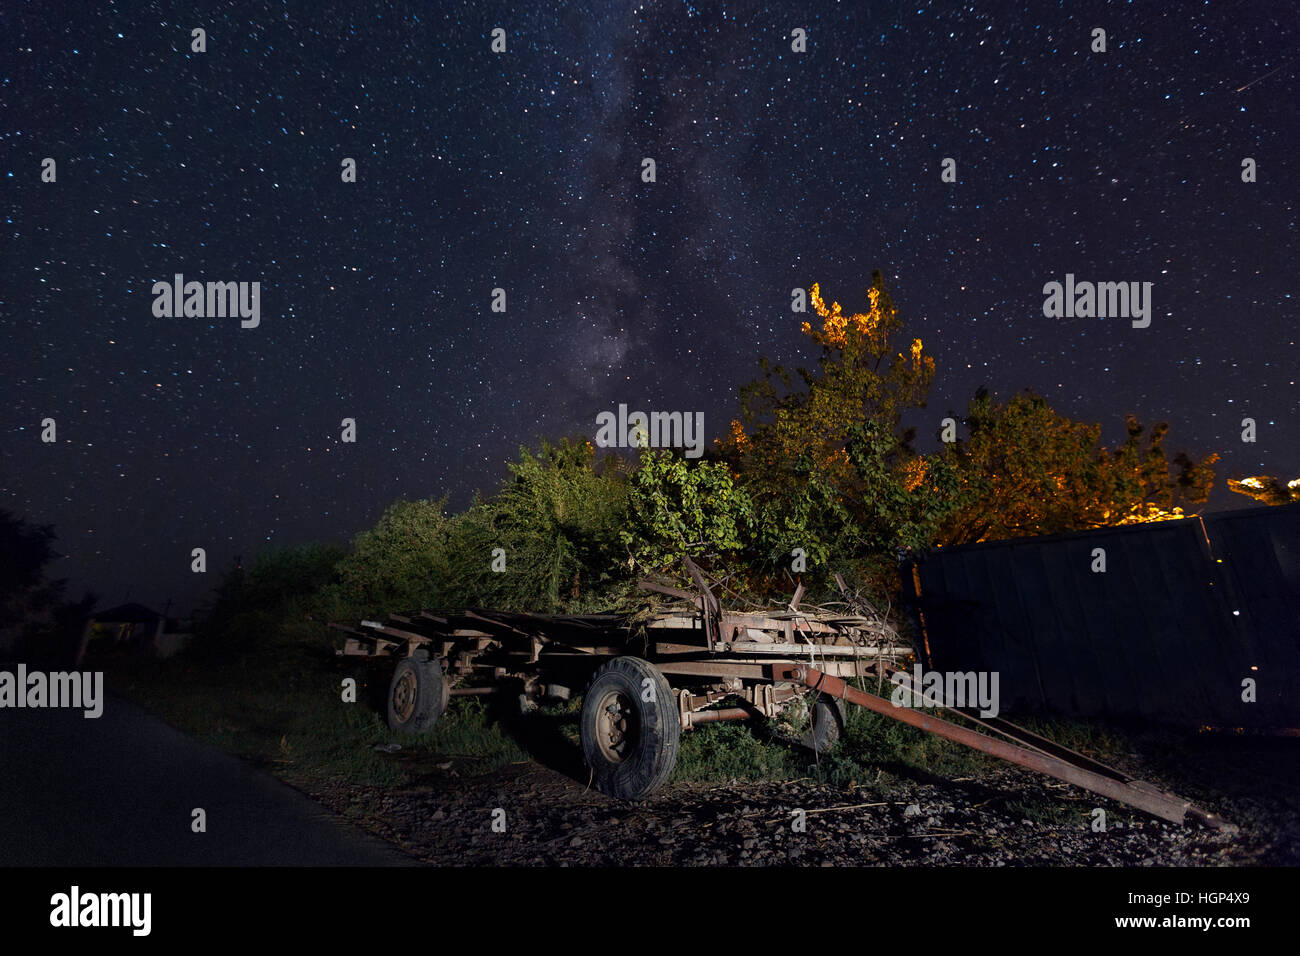 Nachtszene im Dorf mit einem alten Wagen und der Milchstraße am Himmel, Kasachstan Stockfoto